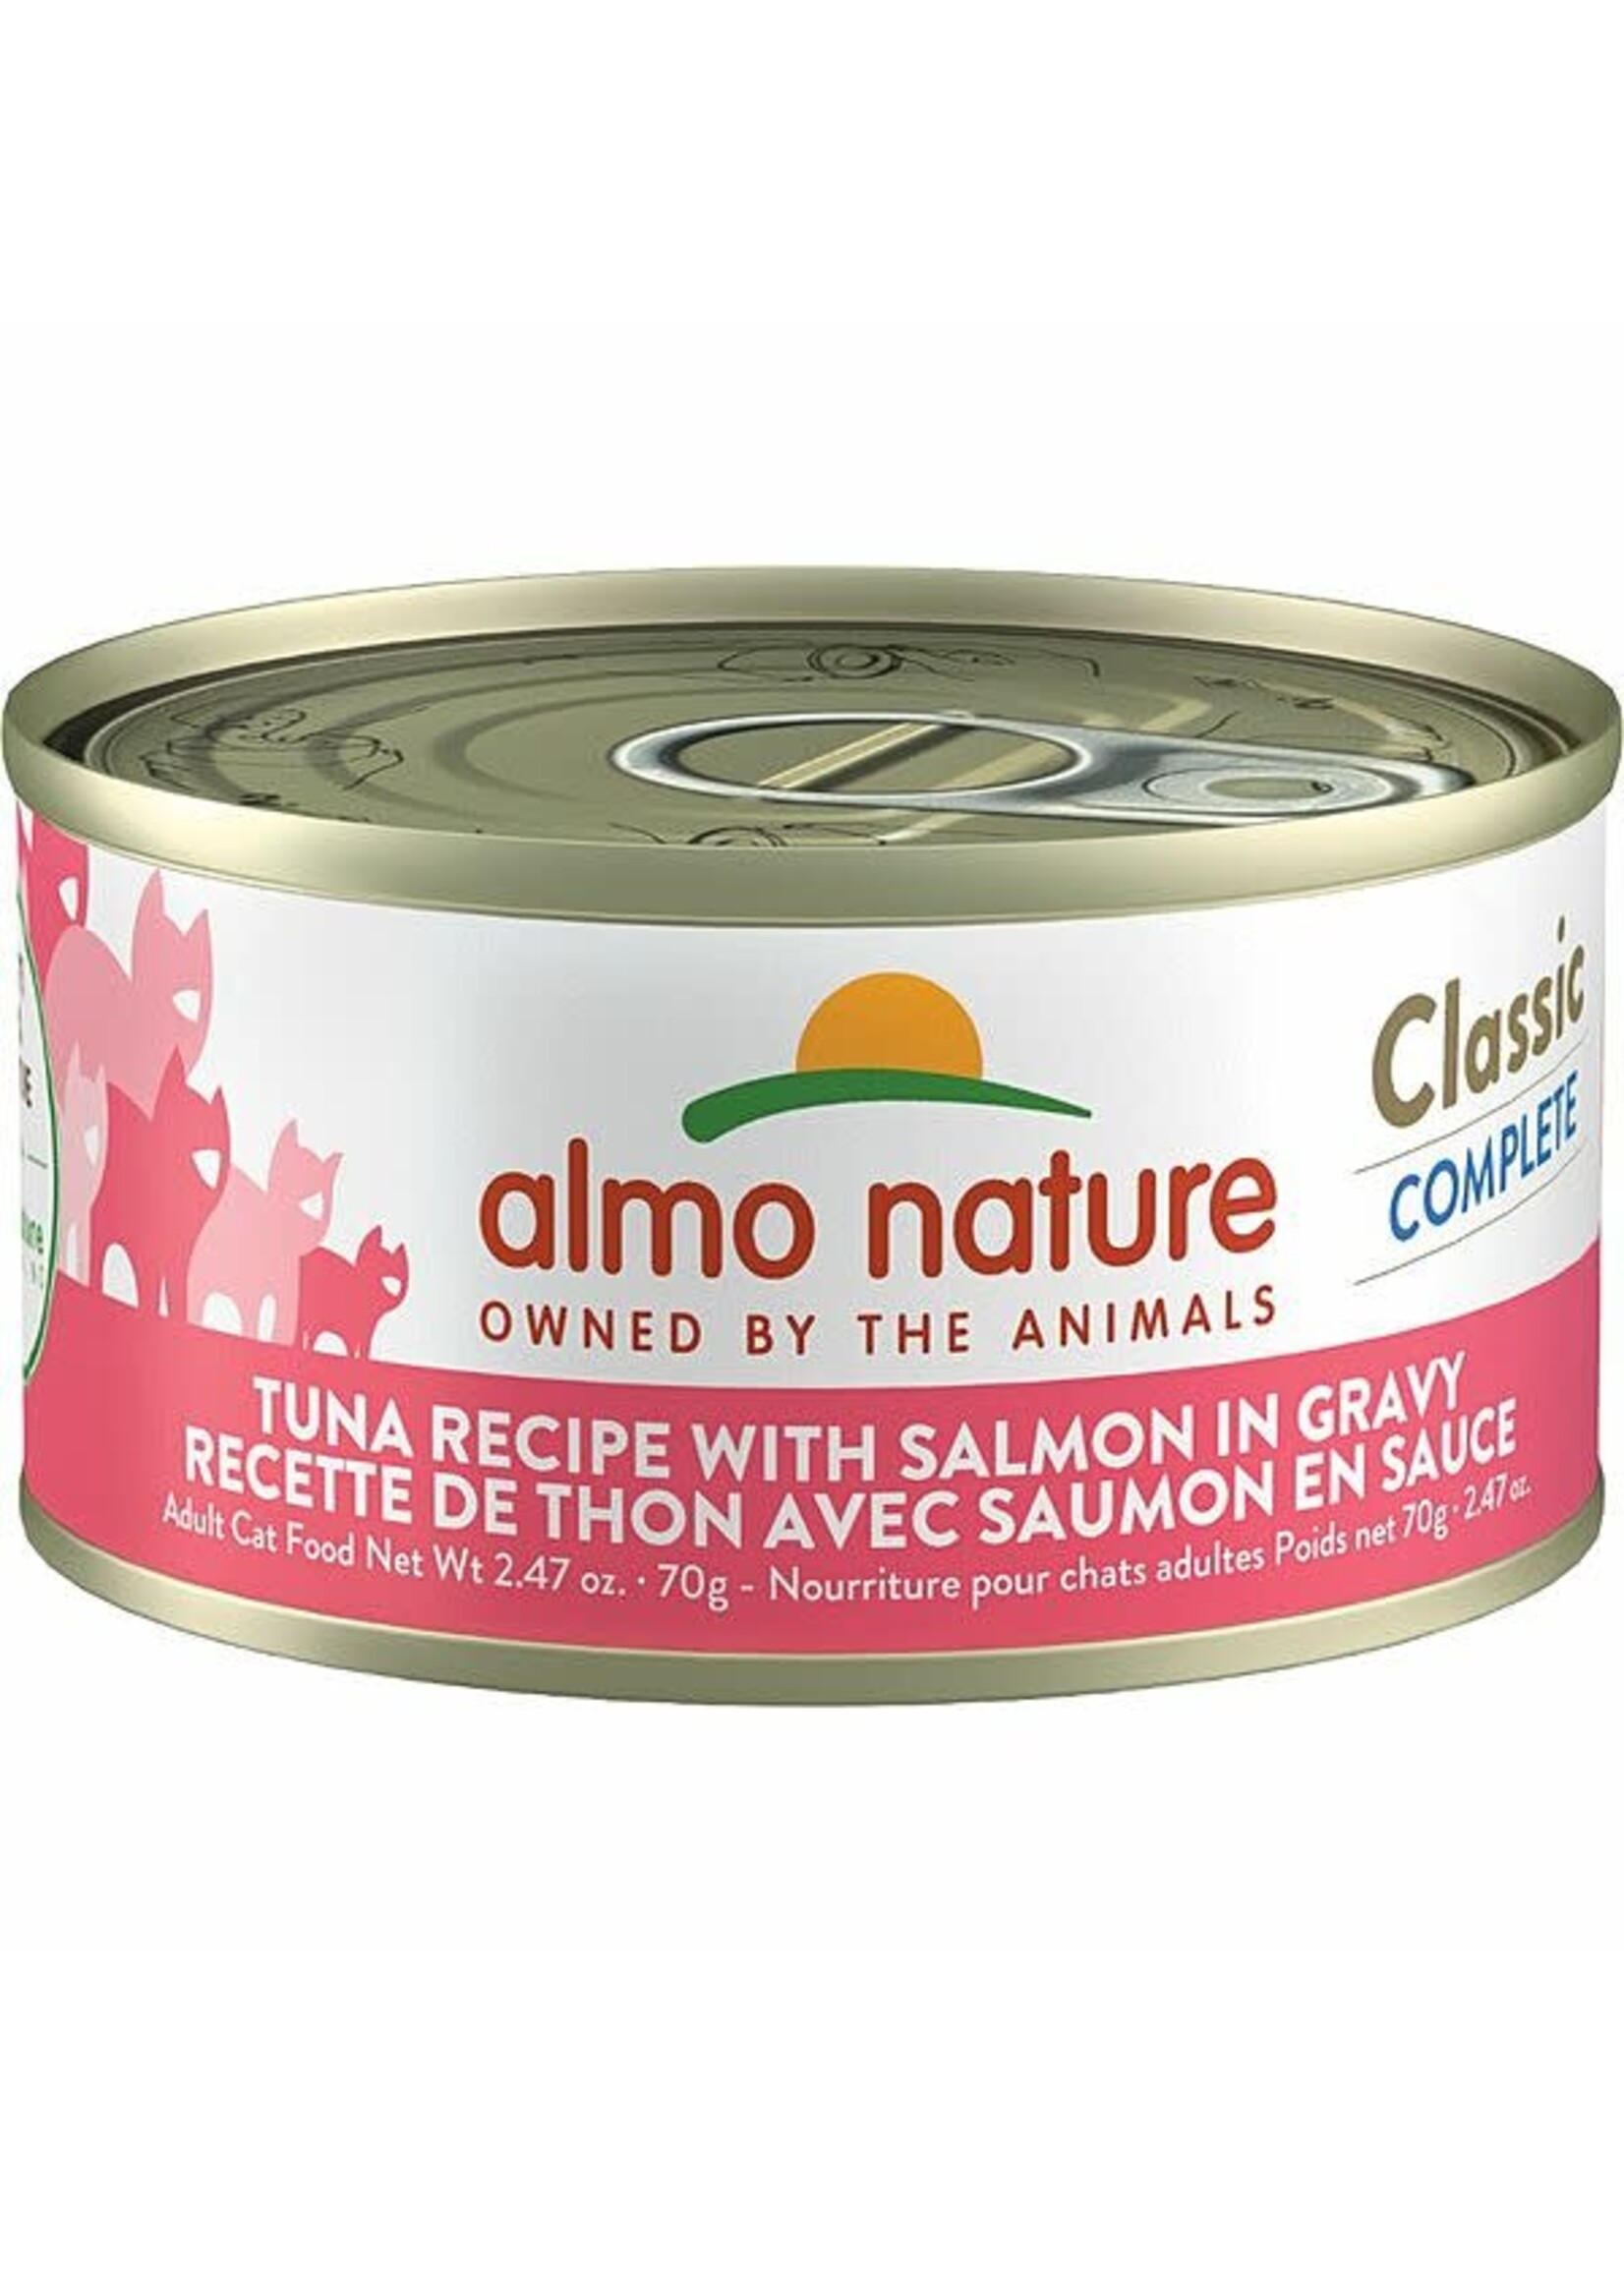 almo Nature almo nature Classic Complete Tuna Recipe w/ Salmon in Gravy 70gm case12